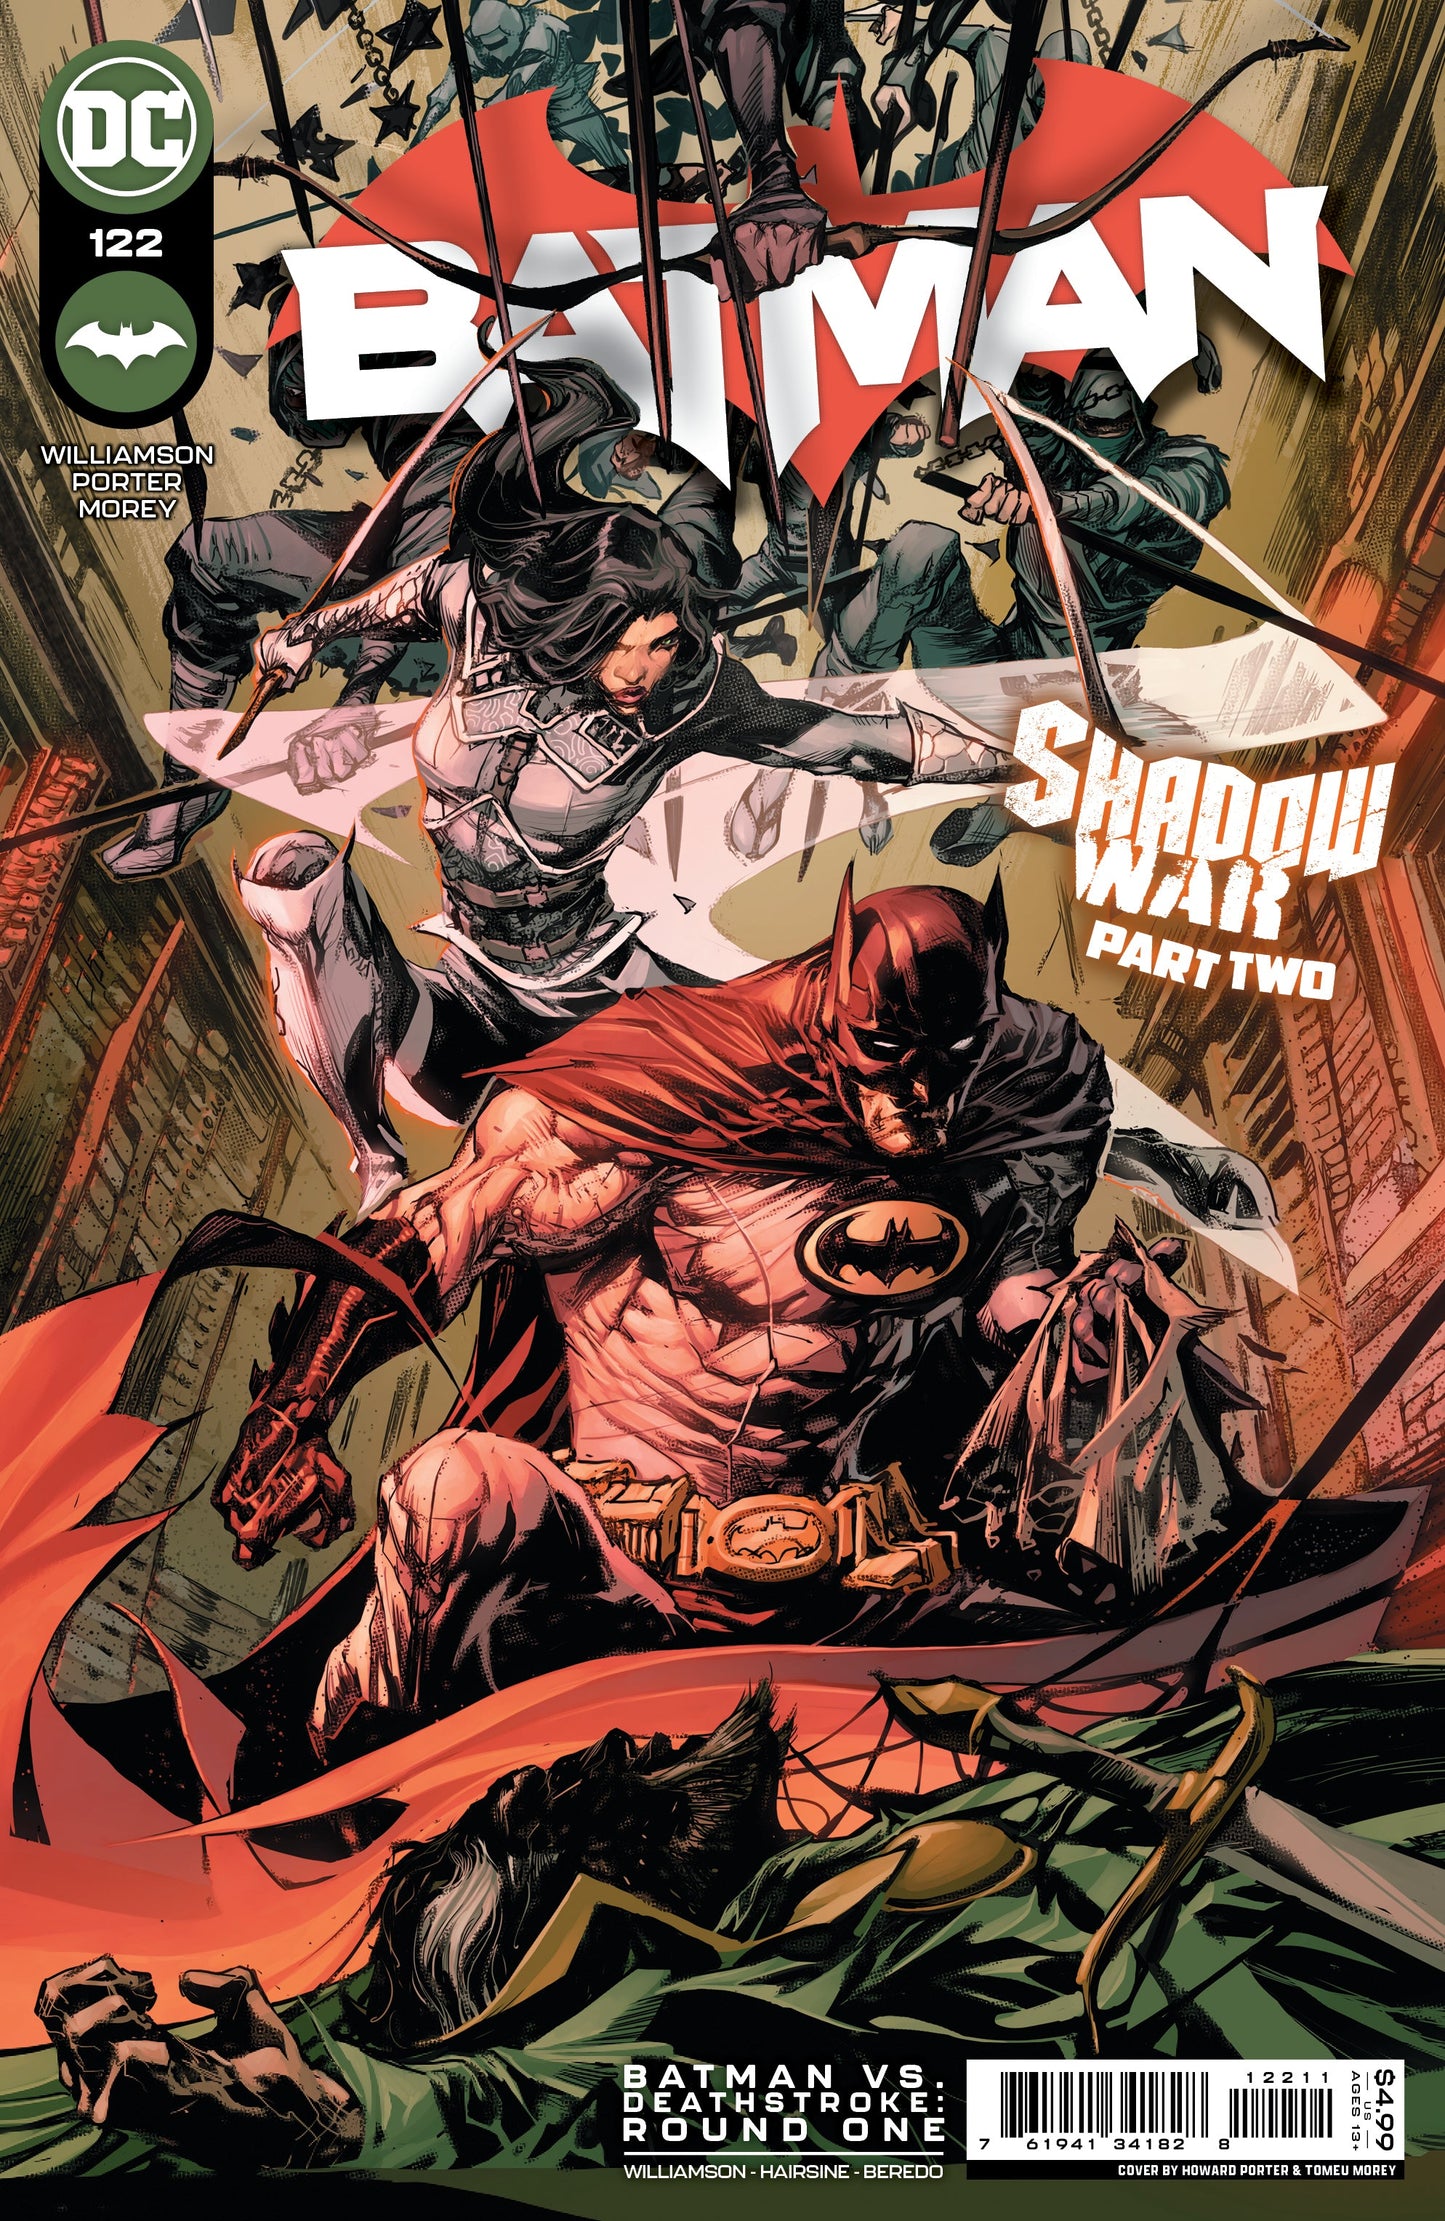 BATMAN #122 COVER A